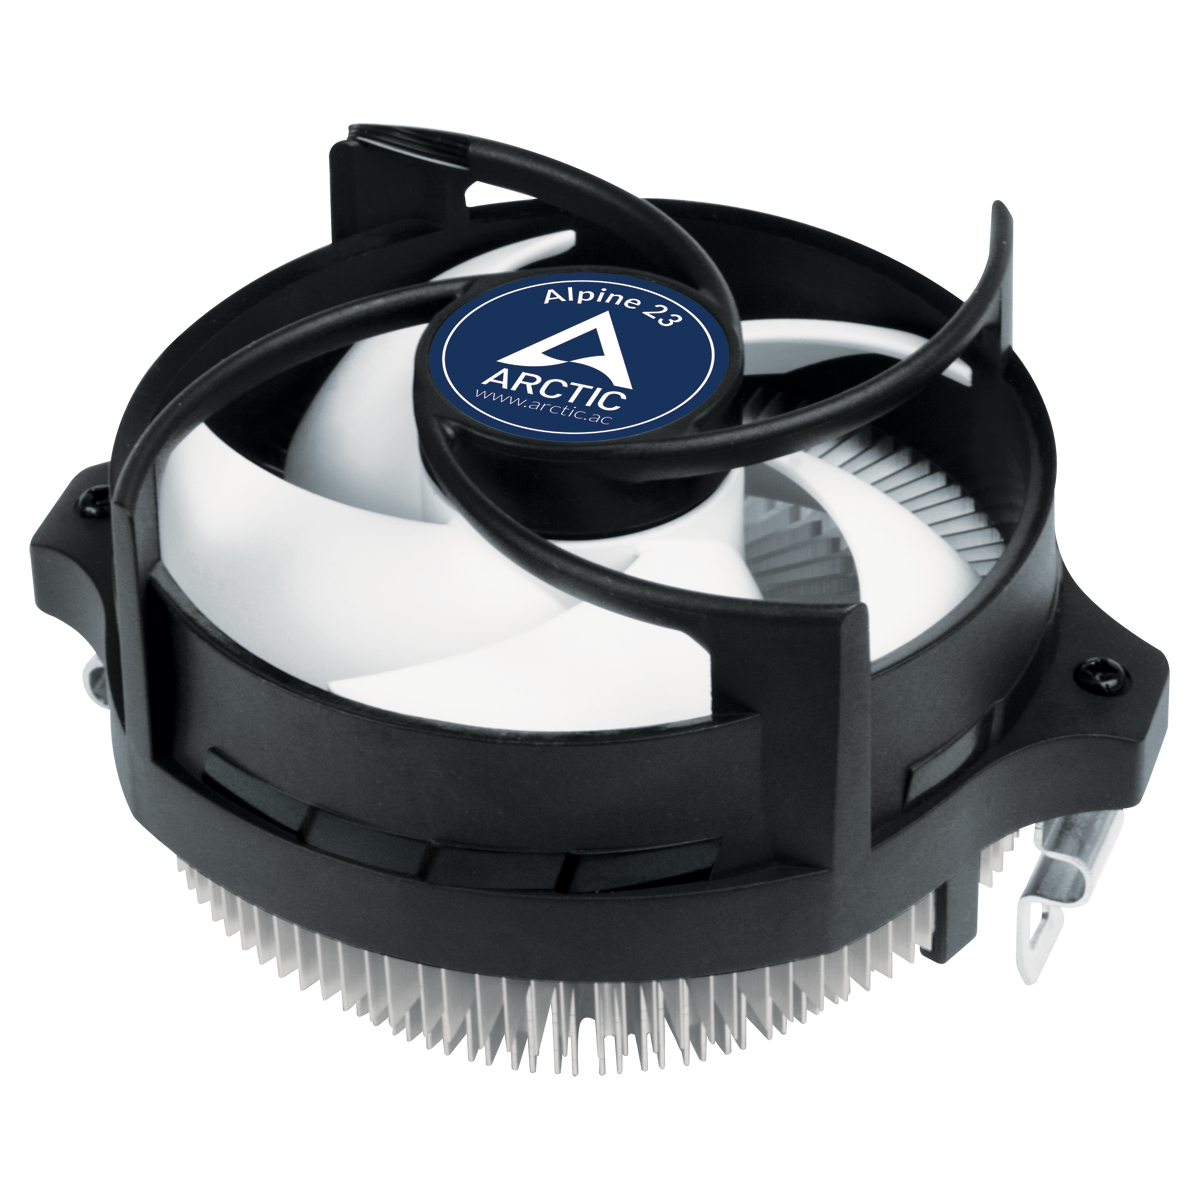 ARCTIC Alpine AM4 Passive Geräuschloser AM4 CPU Kühler Einfache und schnelle Montage Sehr hohe Kühlleistung und vollkommen wartungsfrei Größe 99 X 70 mm 